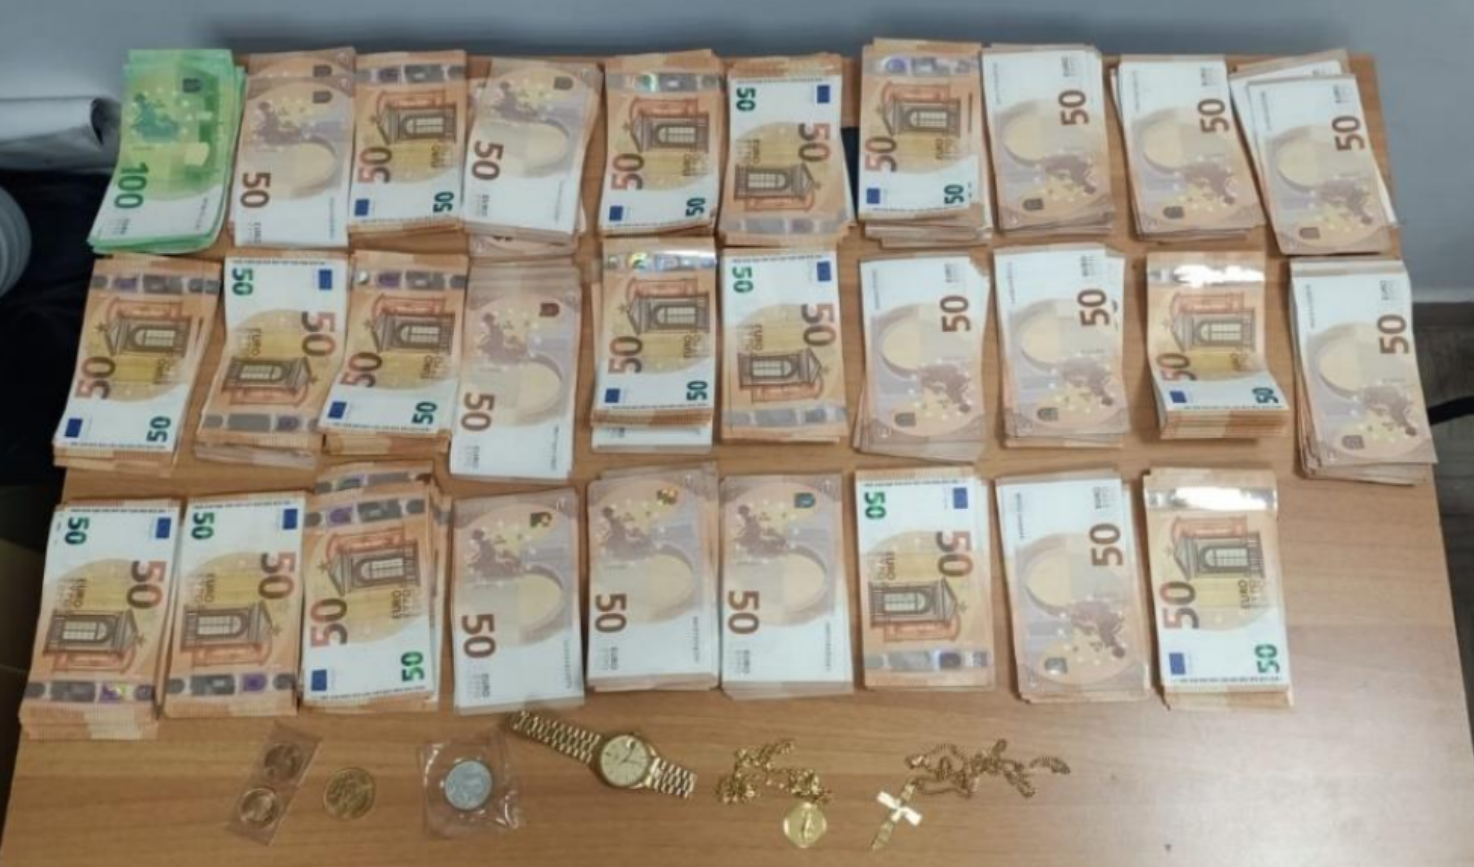  Truffe anziani: quattro arresti dopo due colpi, recuperati 30 mila euro